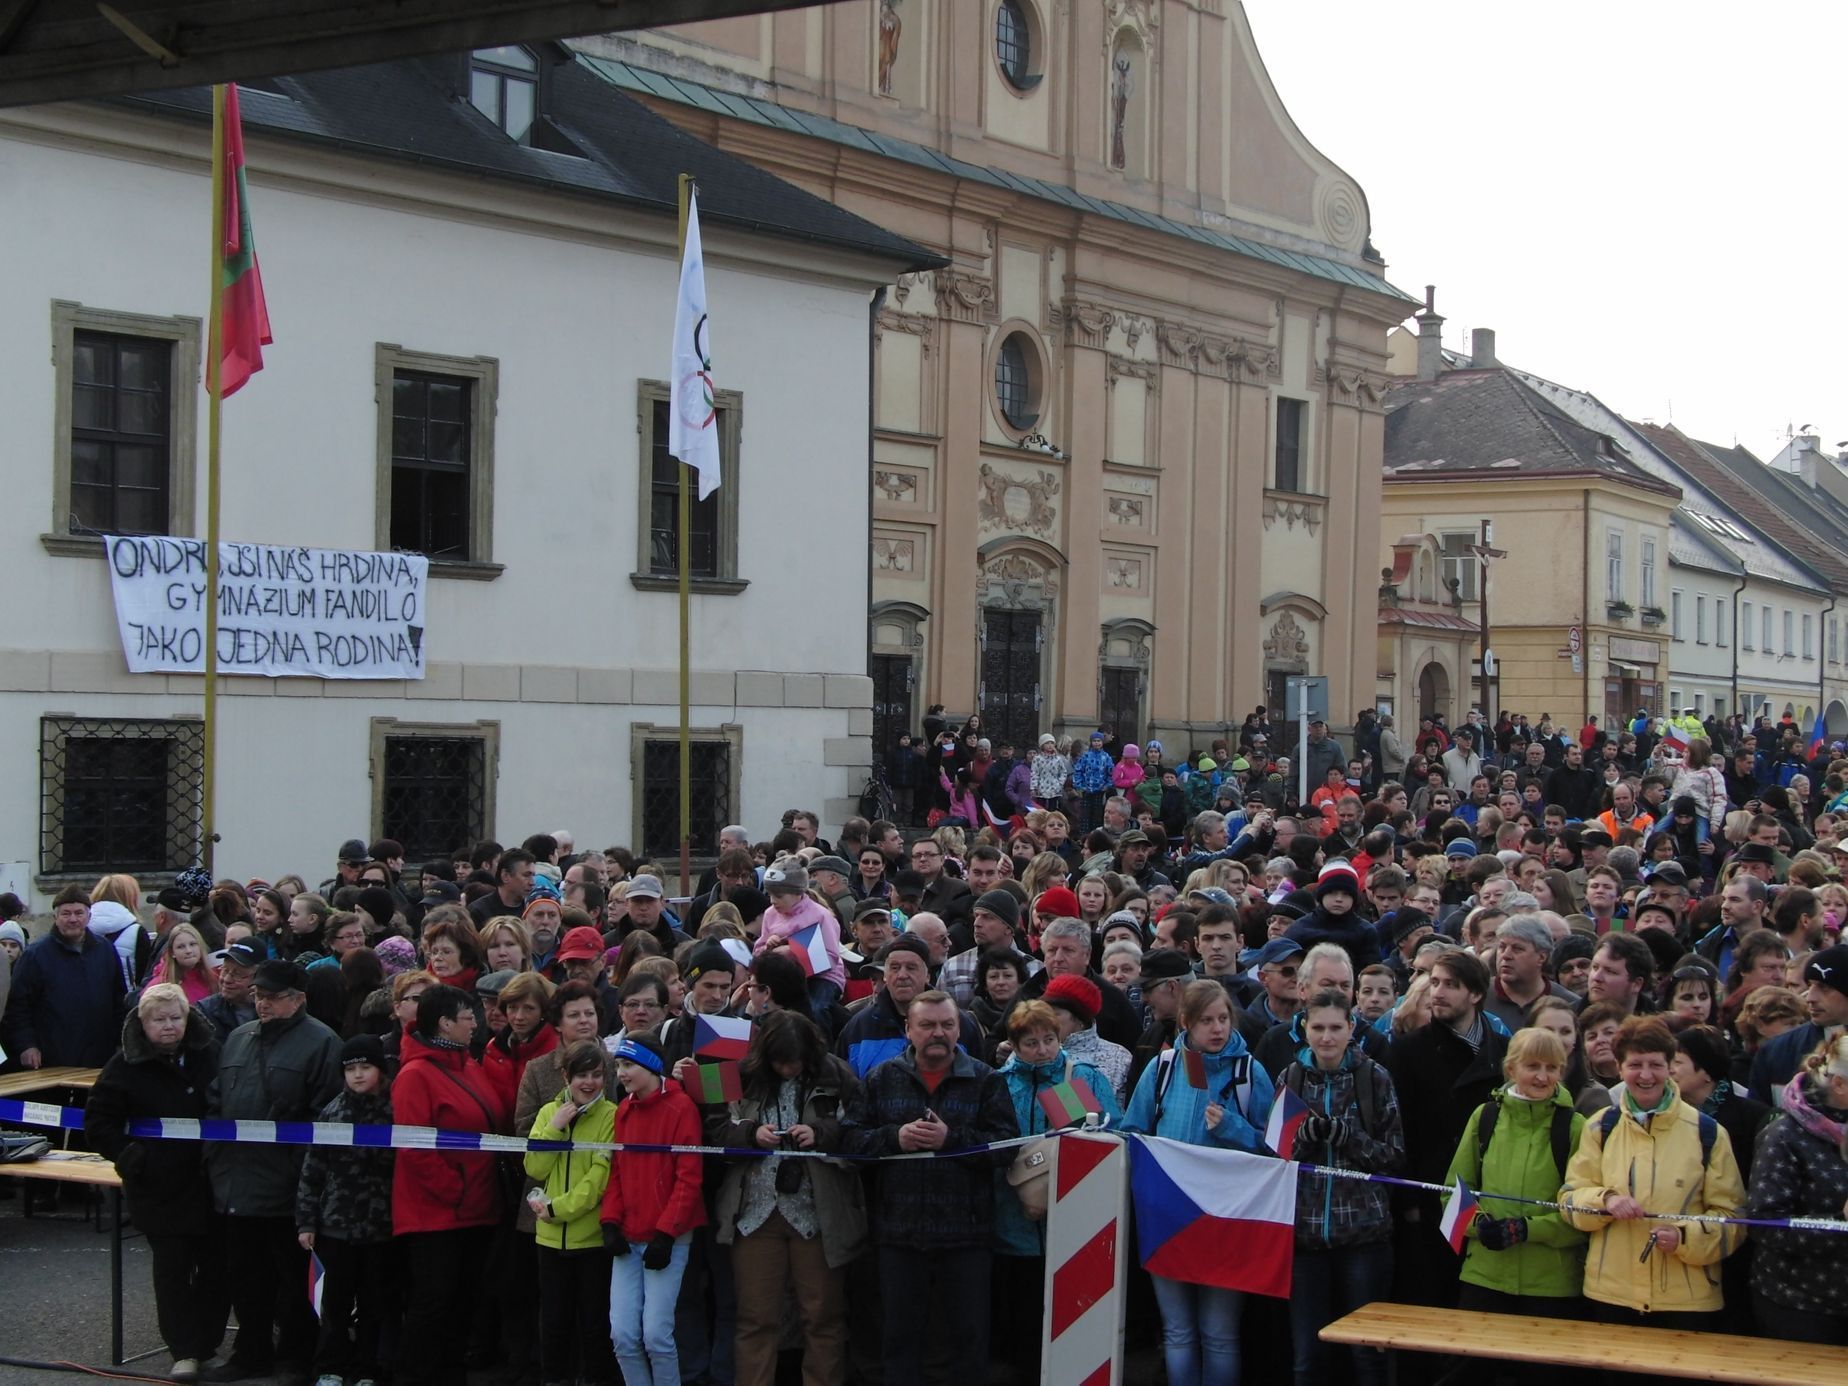 Přivítání Ondřeje Moravce v Letohradě